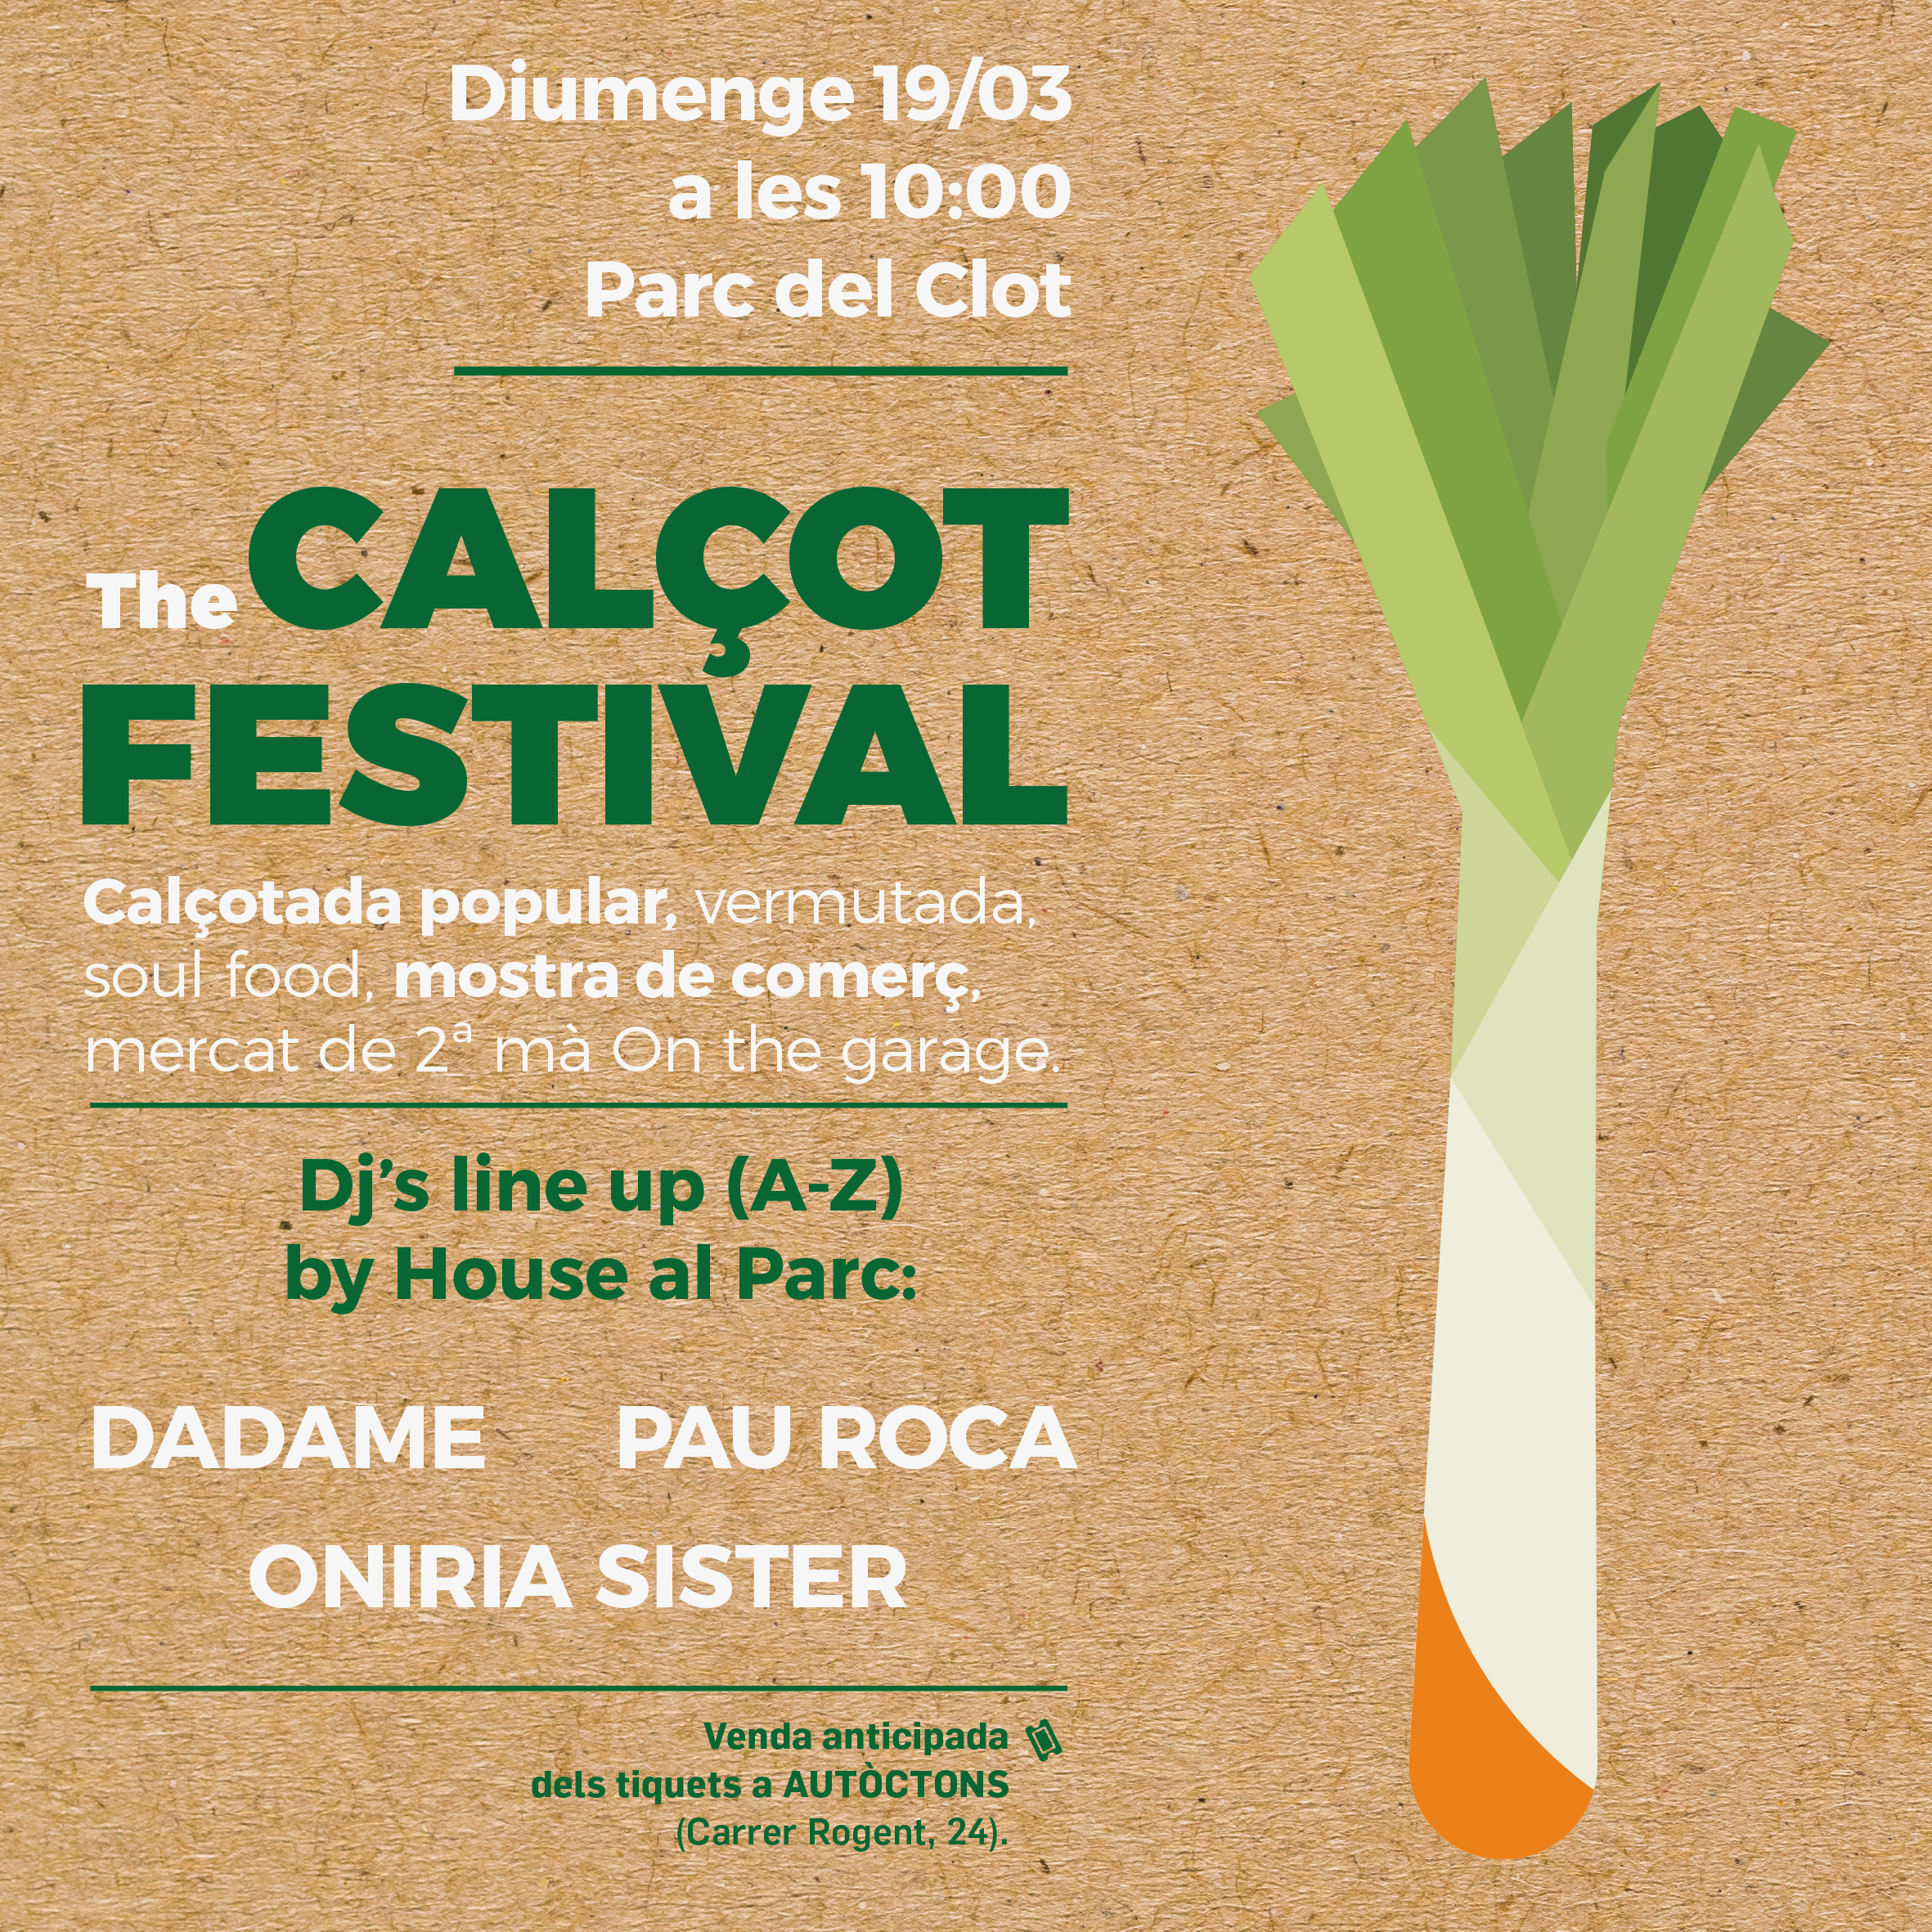 The Calçot Festival (5ª edición)